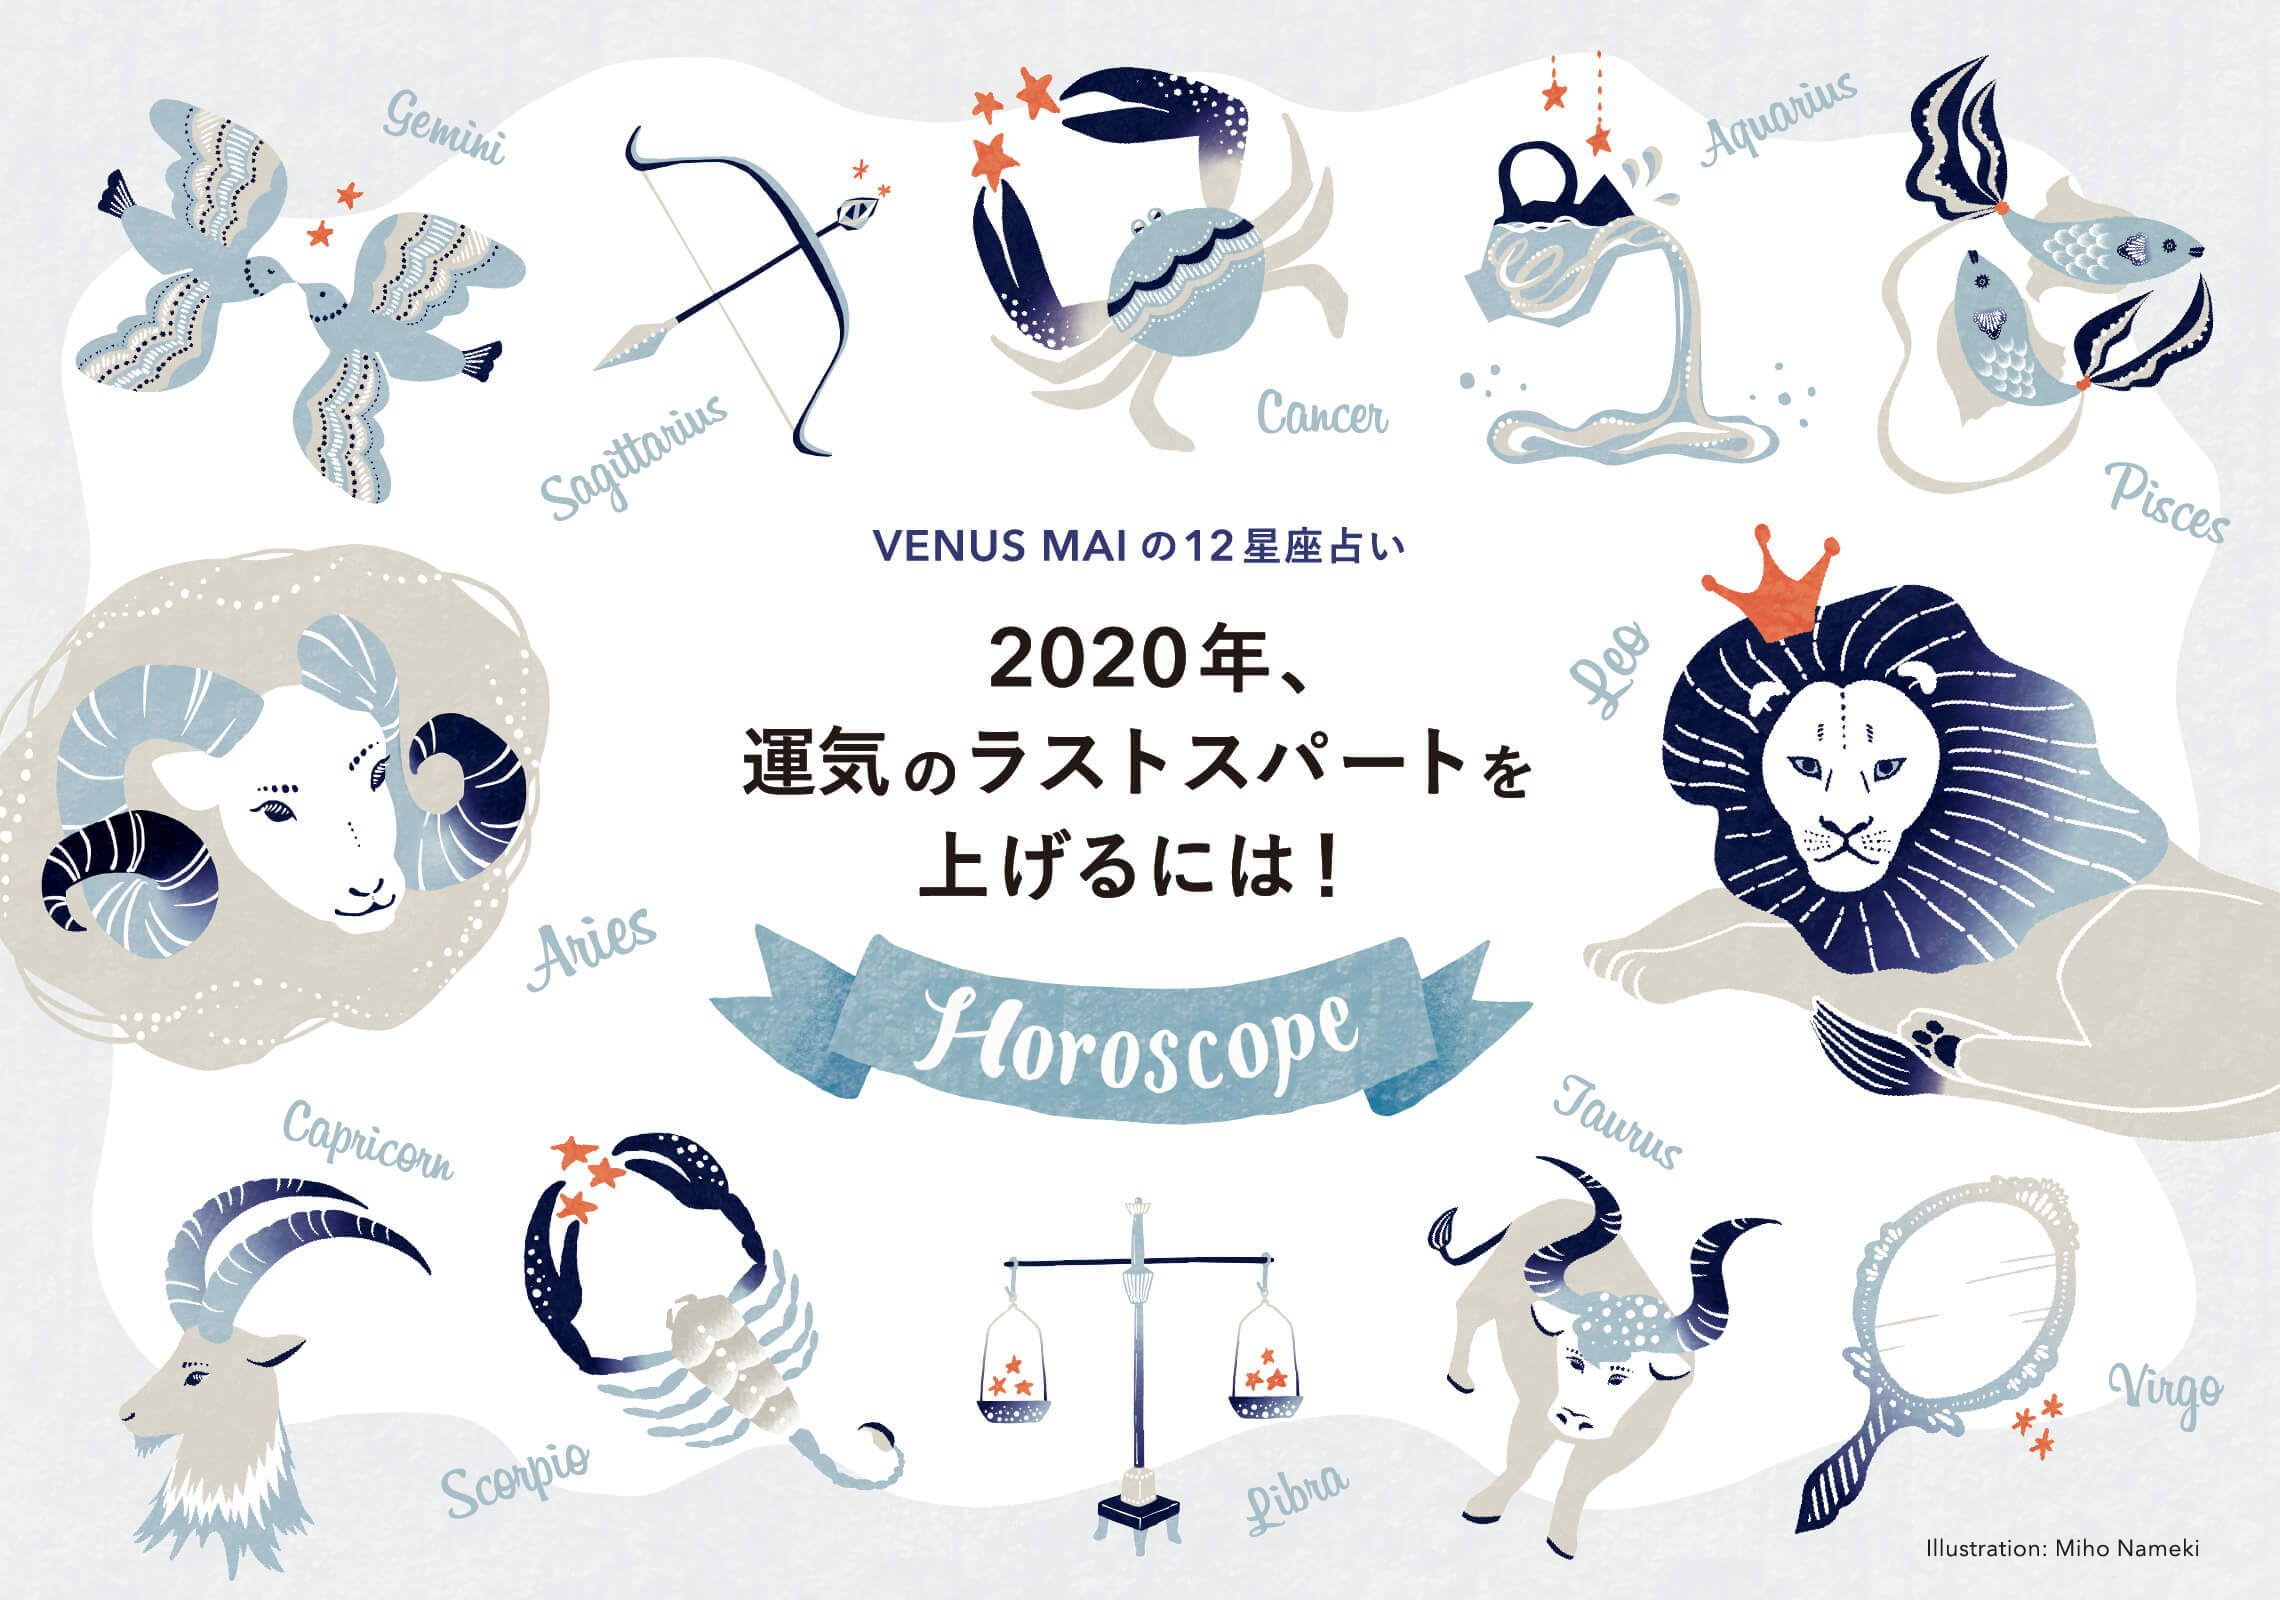 お仕事 Topkapi Journal 12星座占いイラスト 09 Miho Nameki Illustration Design